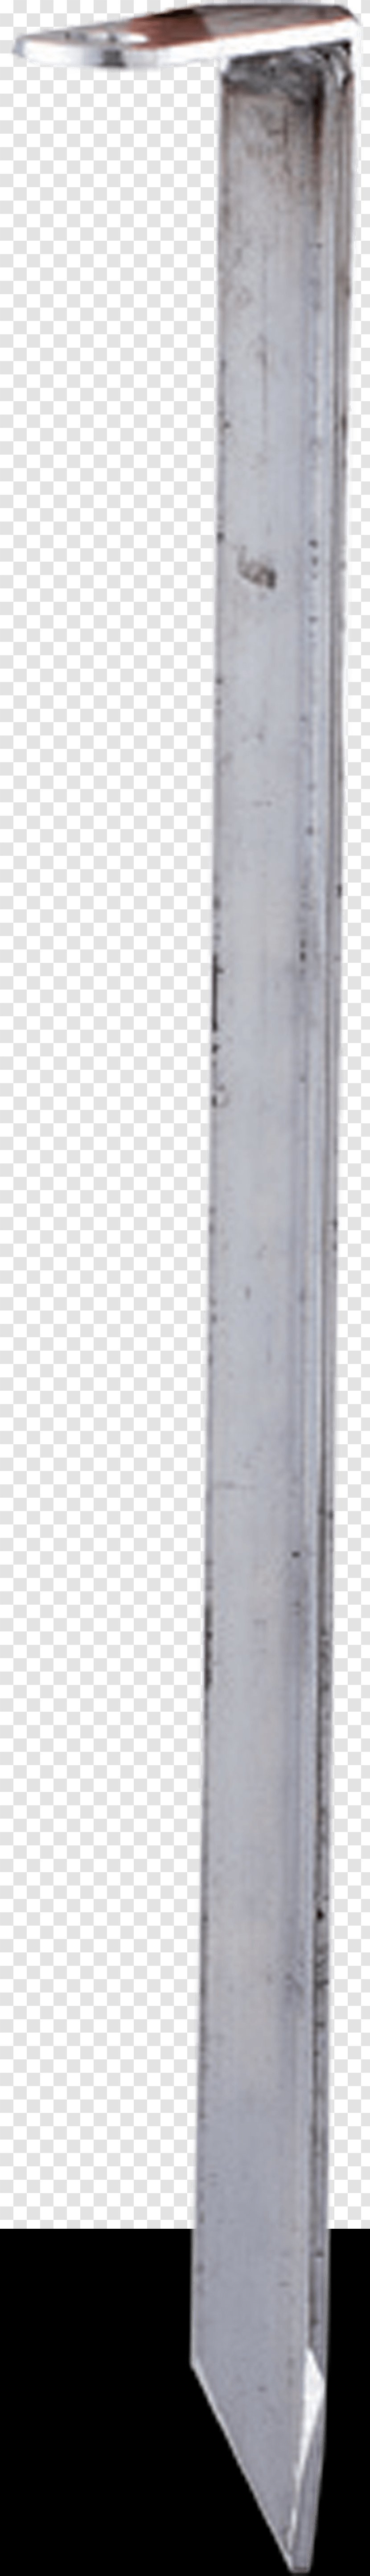 Cylinder Angle Transparent PNG